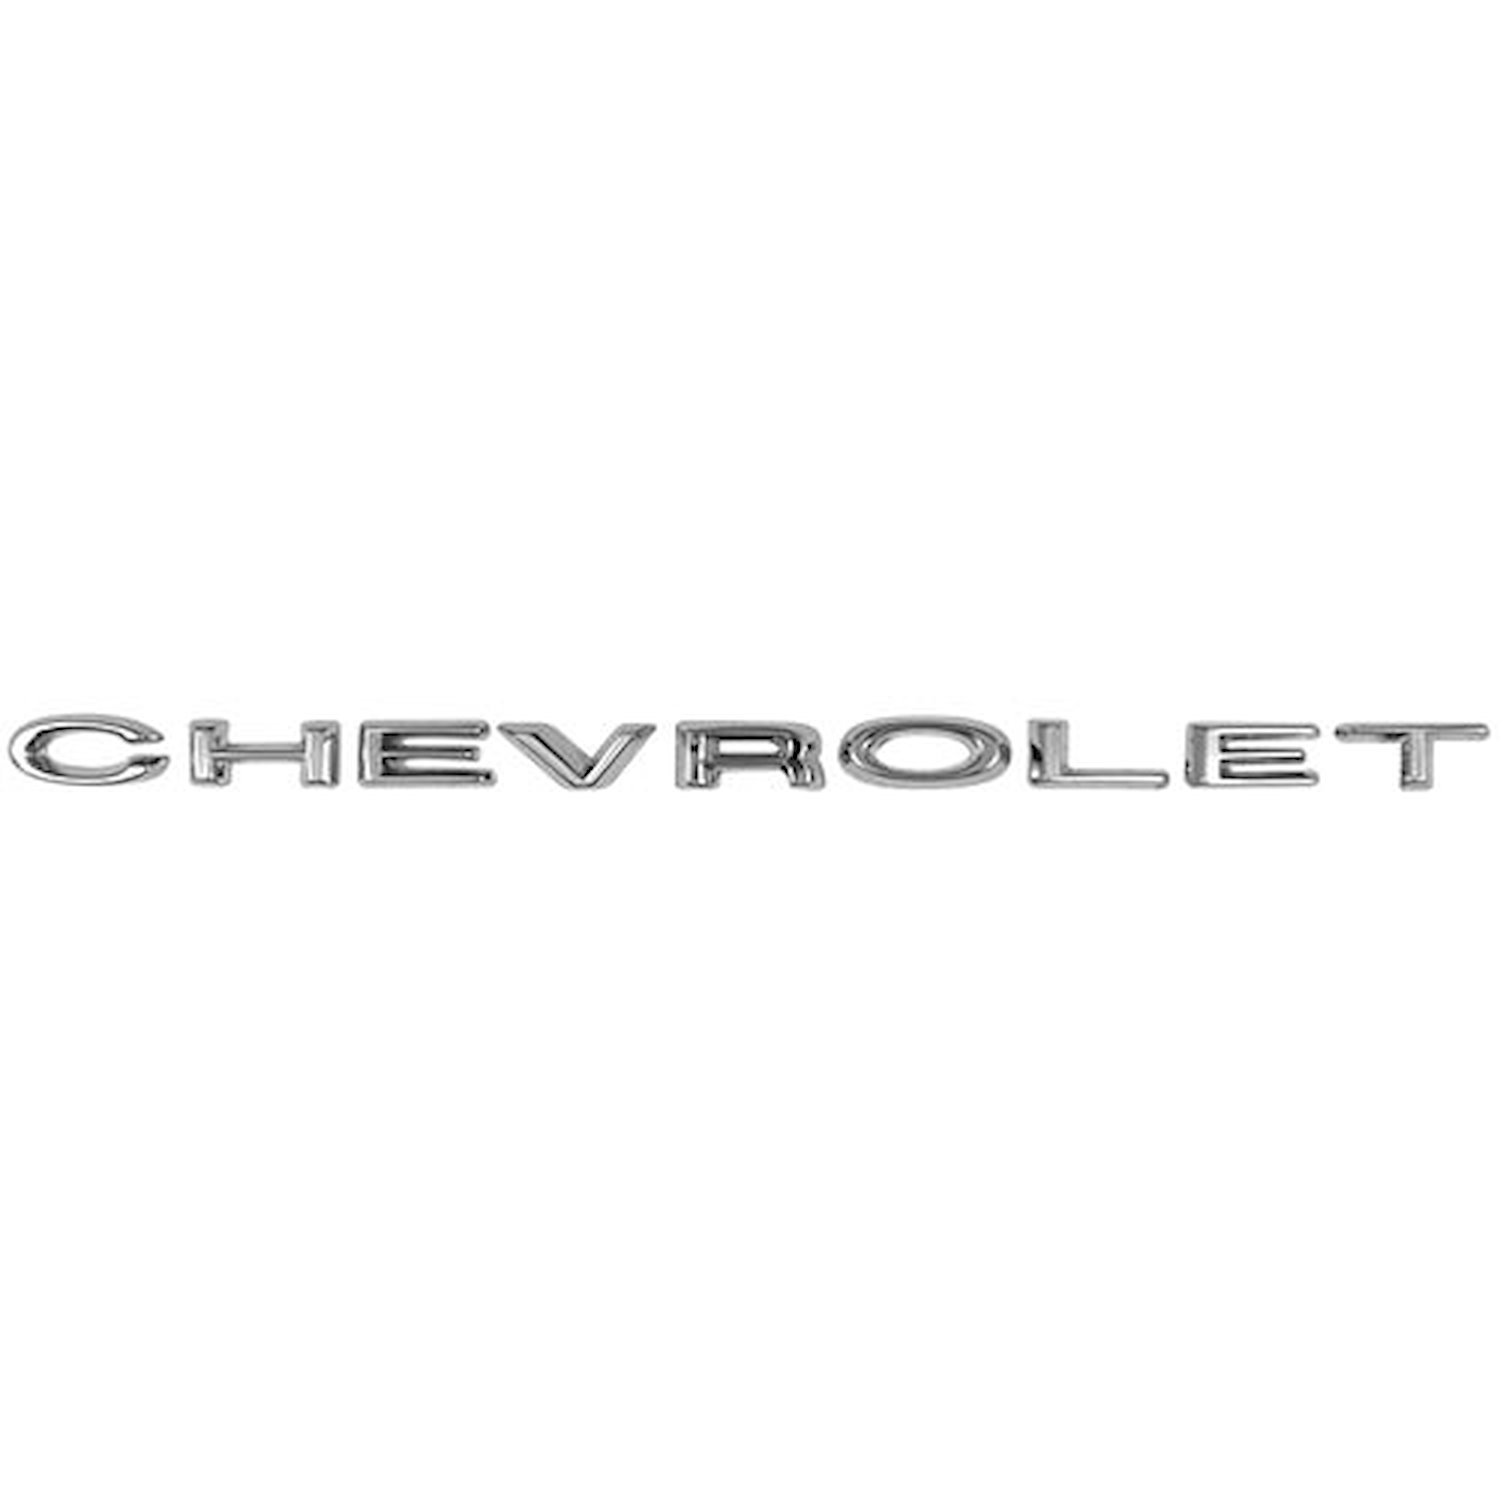 Hood Emblem Letters 1969 Chevy Impala